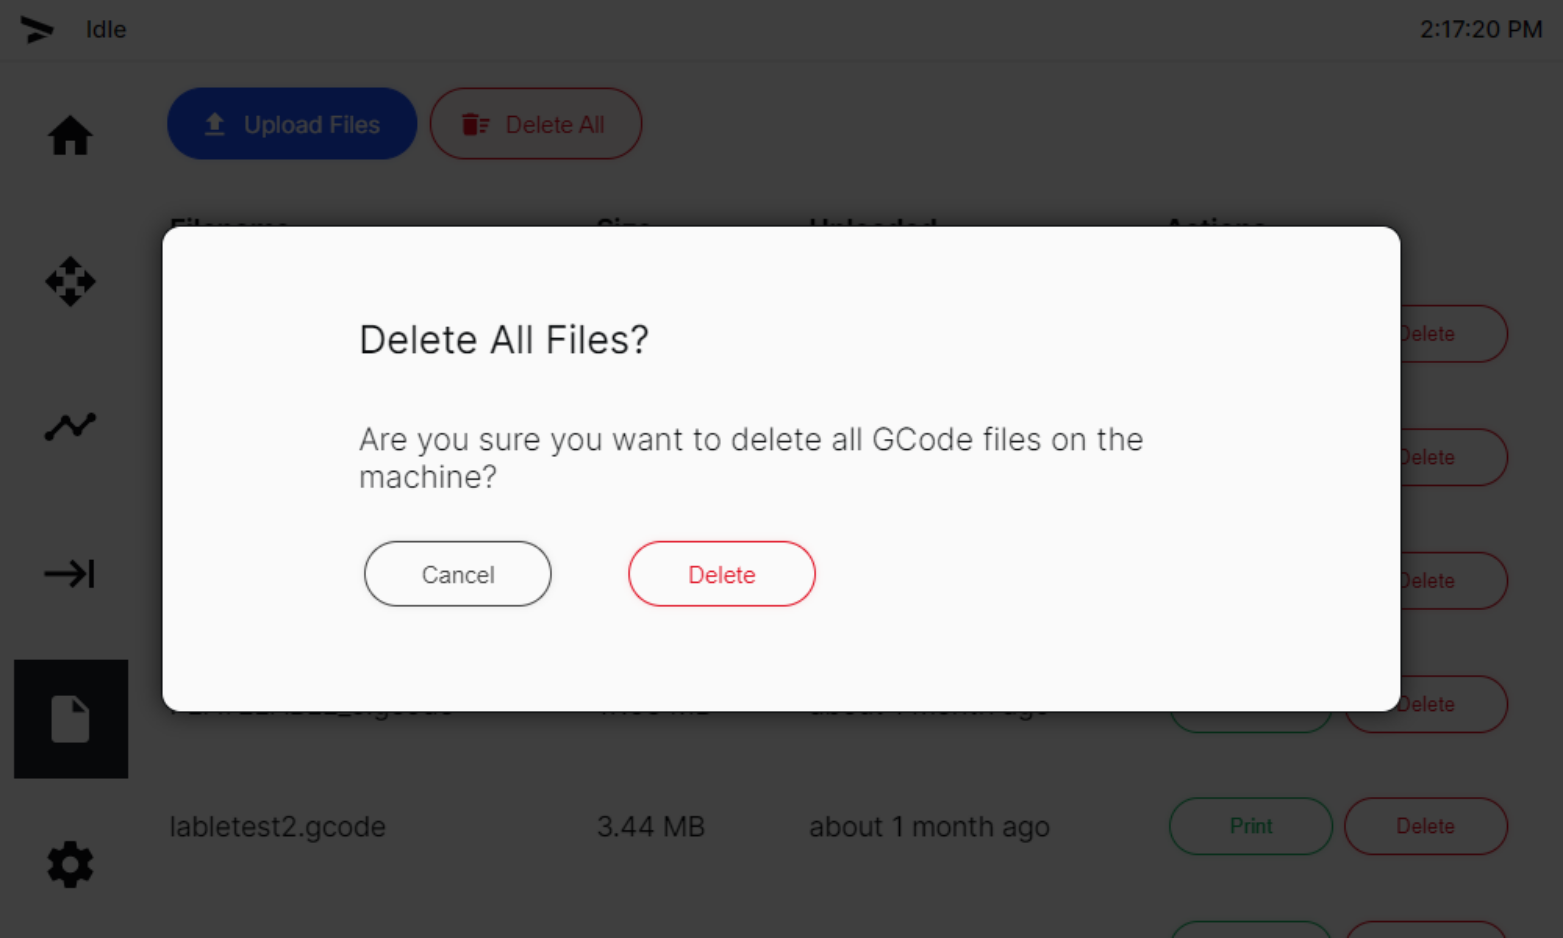 Confirm Delete All Files